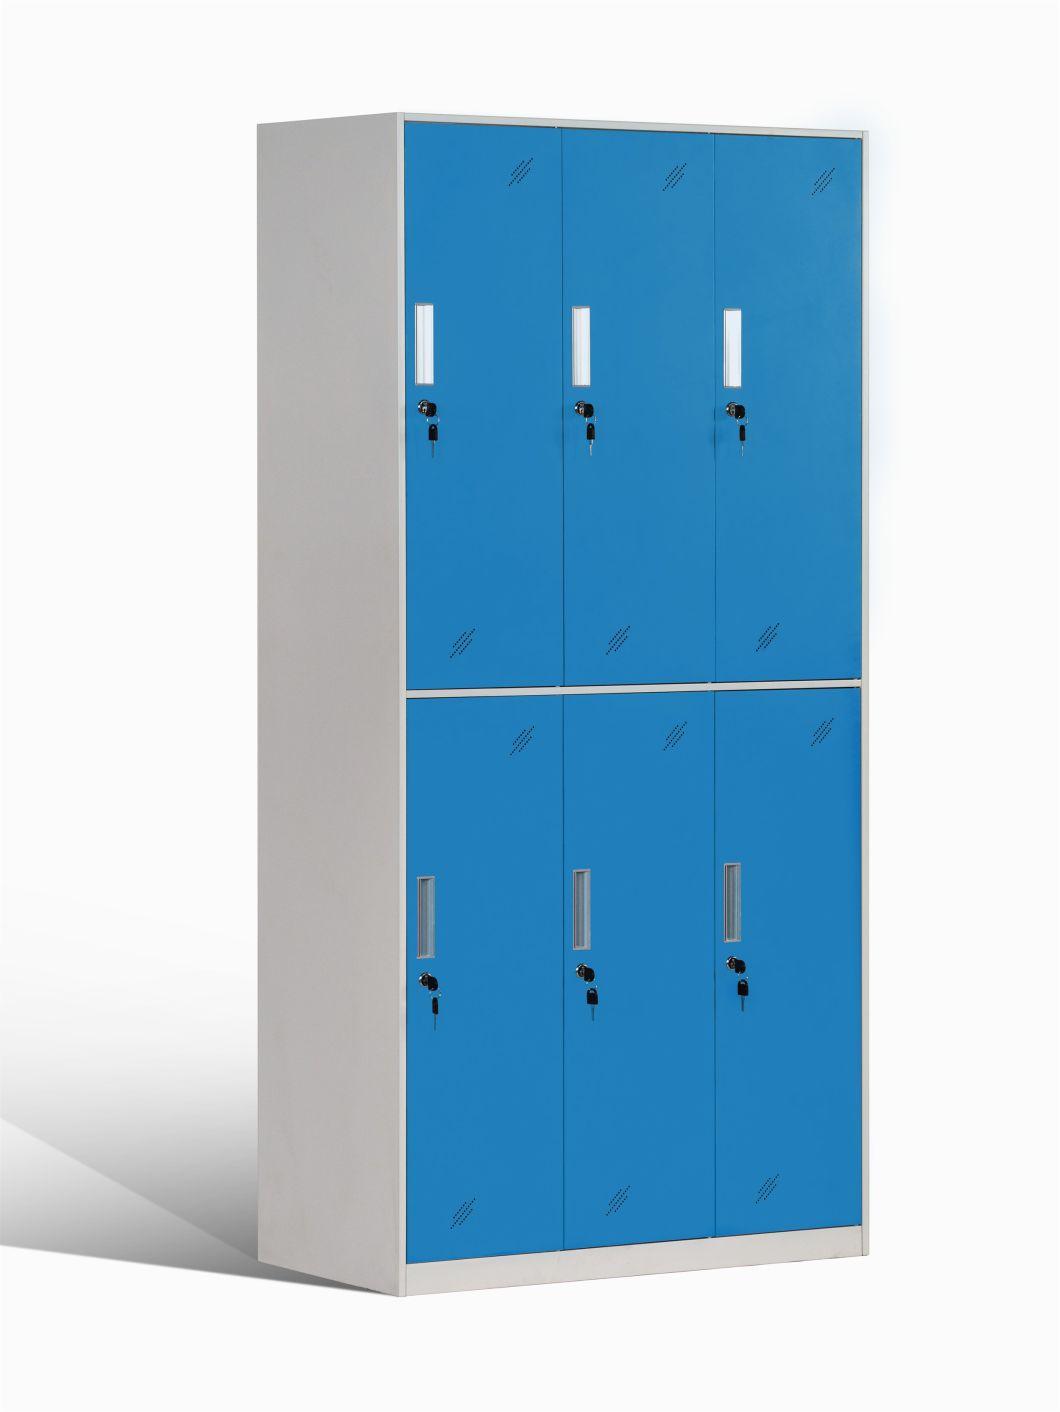 Eesy Assembly Break Room Coat Storage Locker for Employees